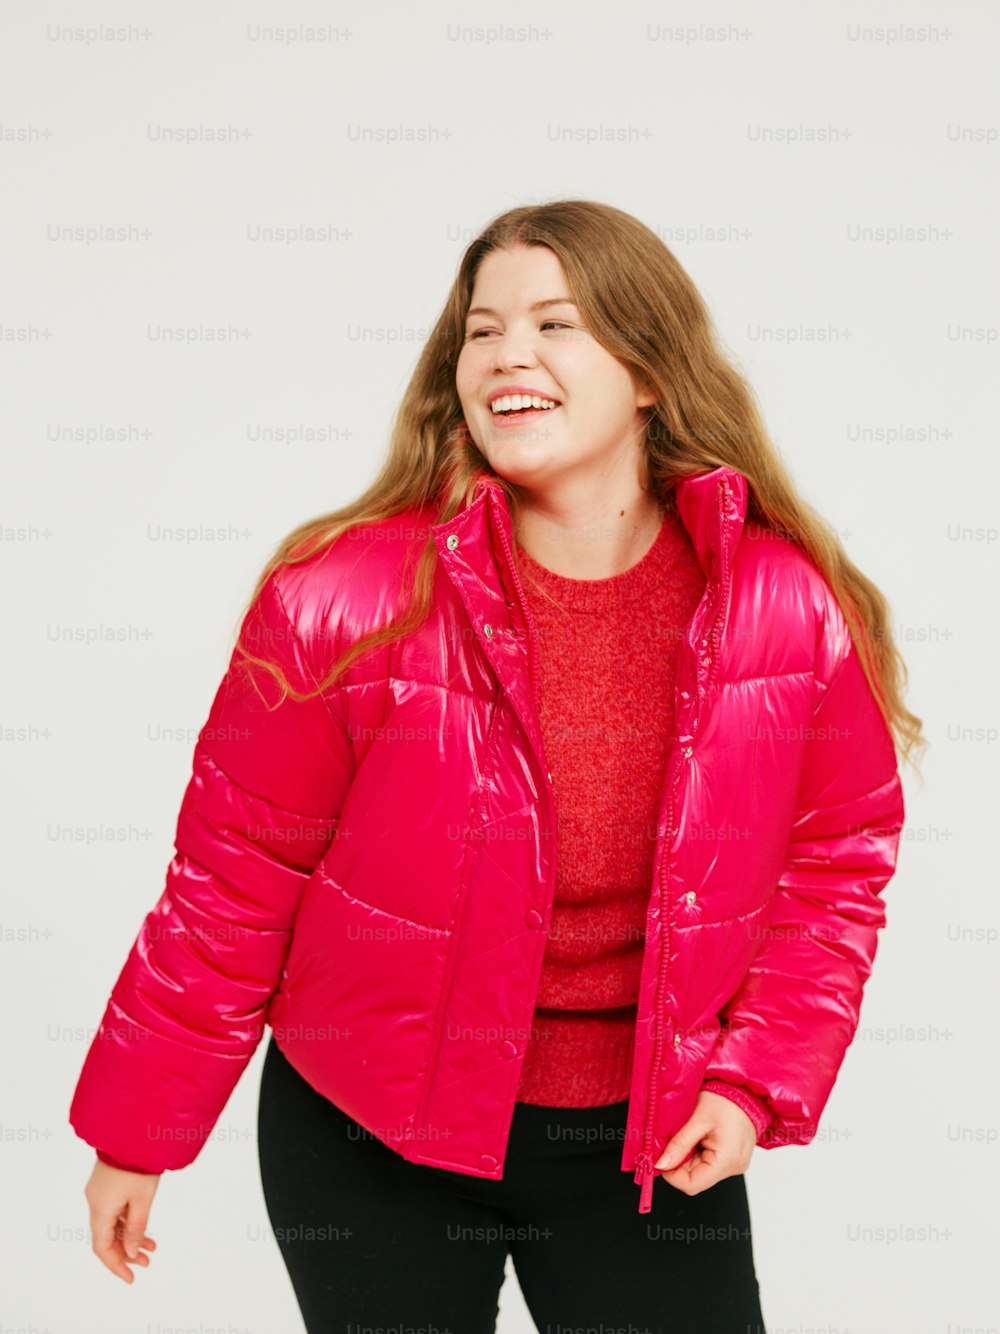 Una mujer con una chaqueta rosa brillante y pantalones negros